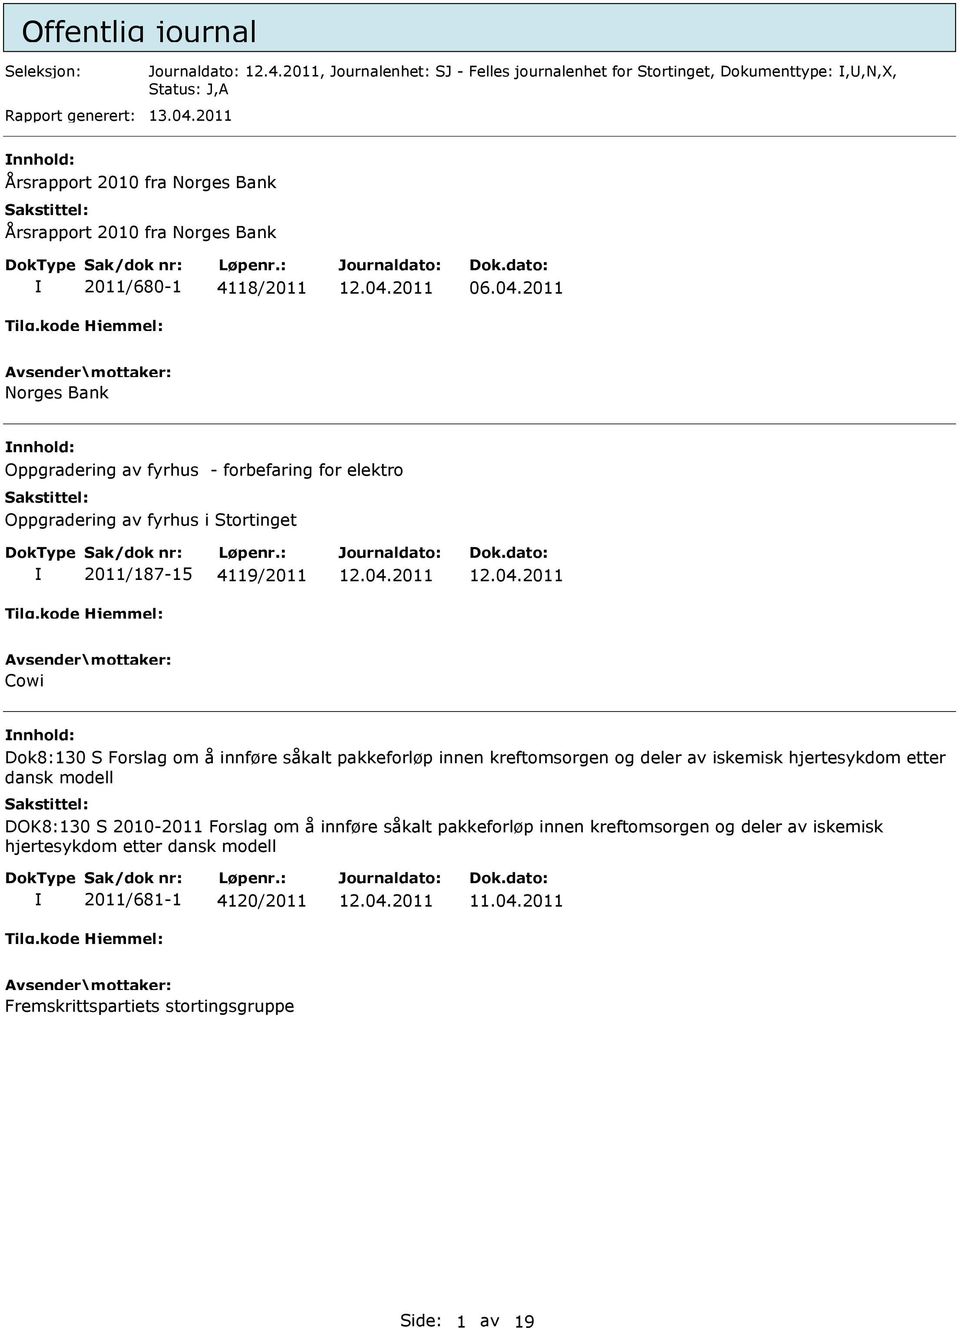 2011 Norges Bank Oppgradering av fyrhus - forbefaring for elektro Oppgradering av fyrhus i Stortinget 2011/187-15 4119/2011 Cowi Dok8:130 S Forslag om å innføre såkalt